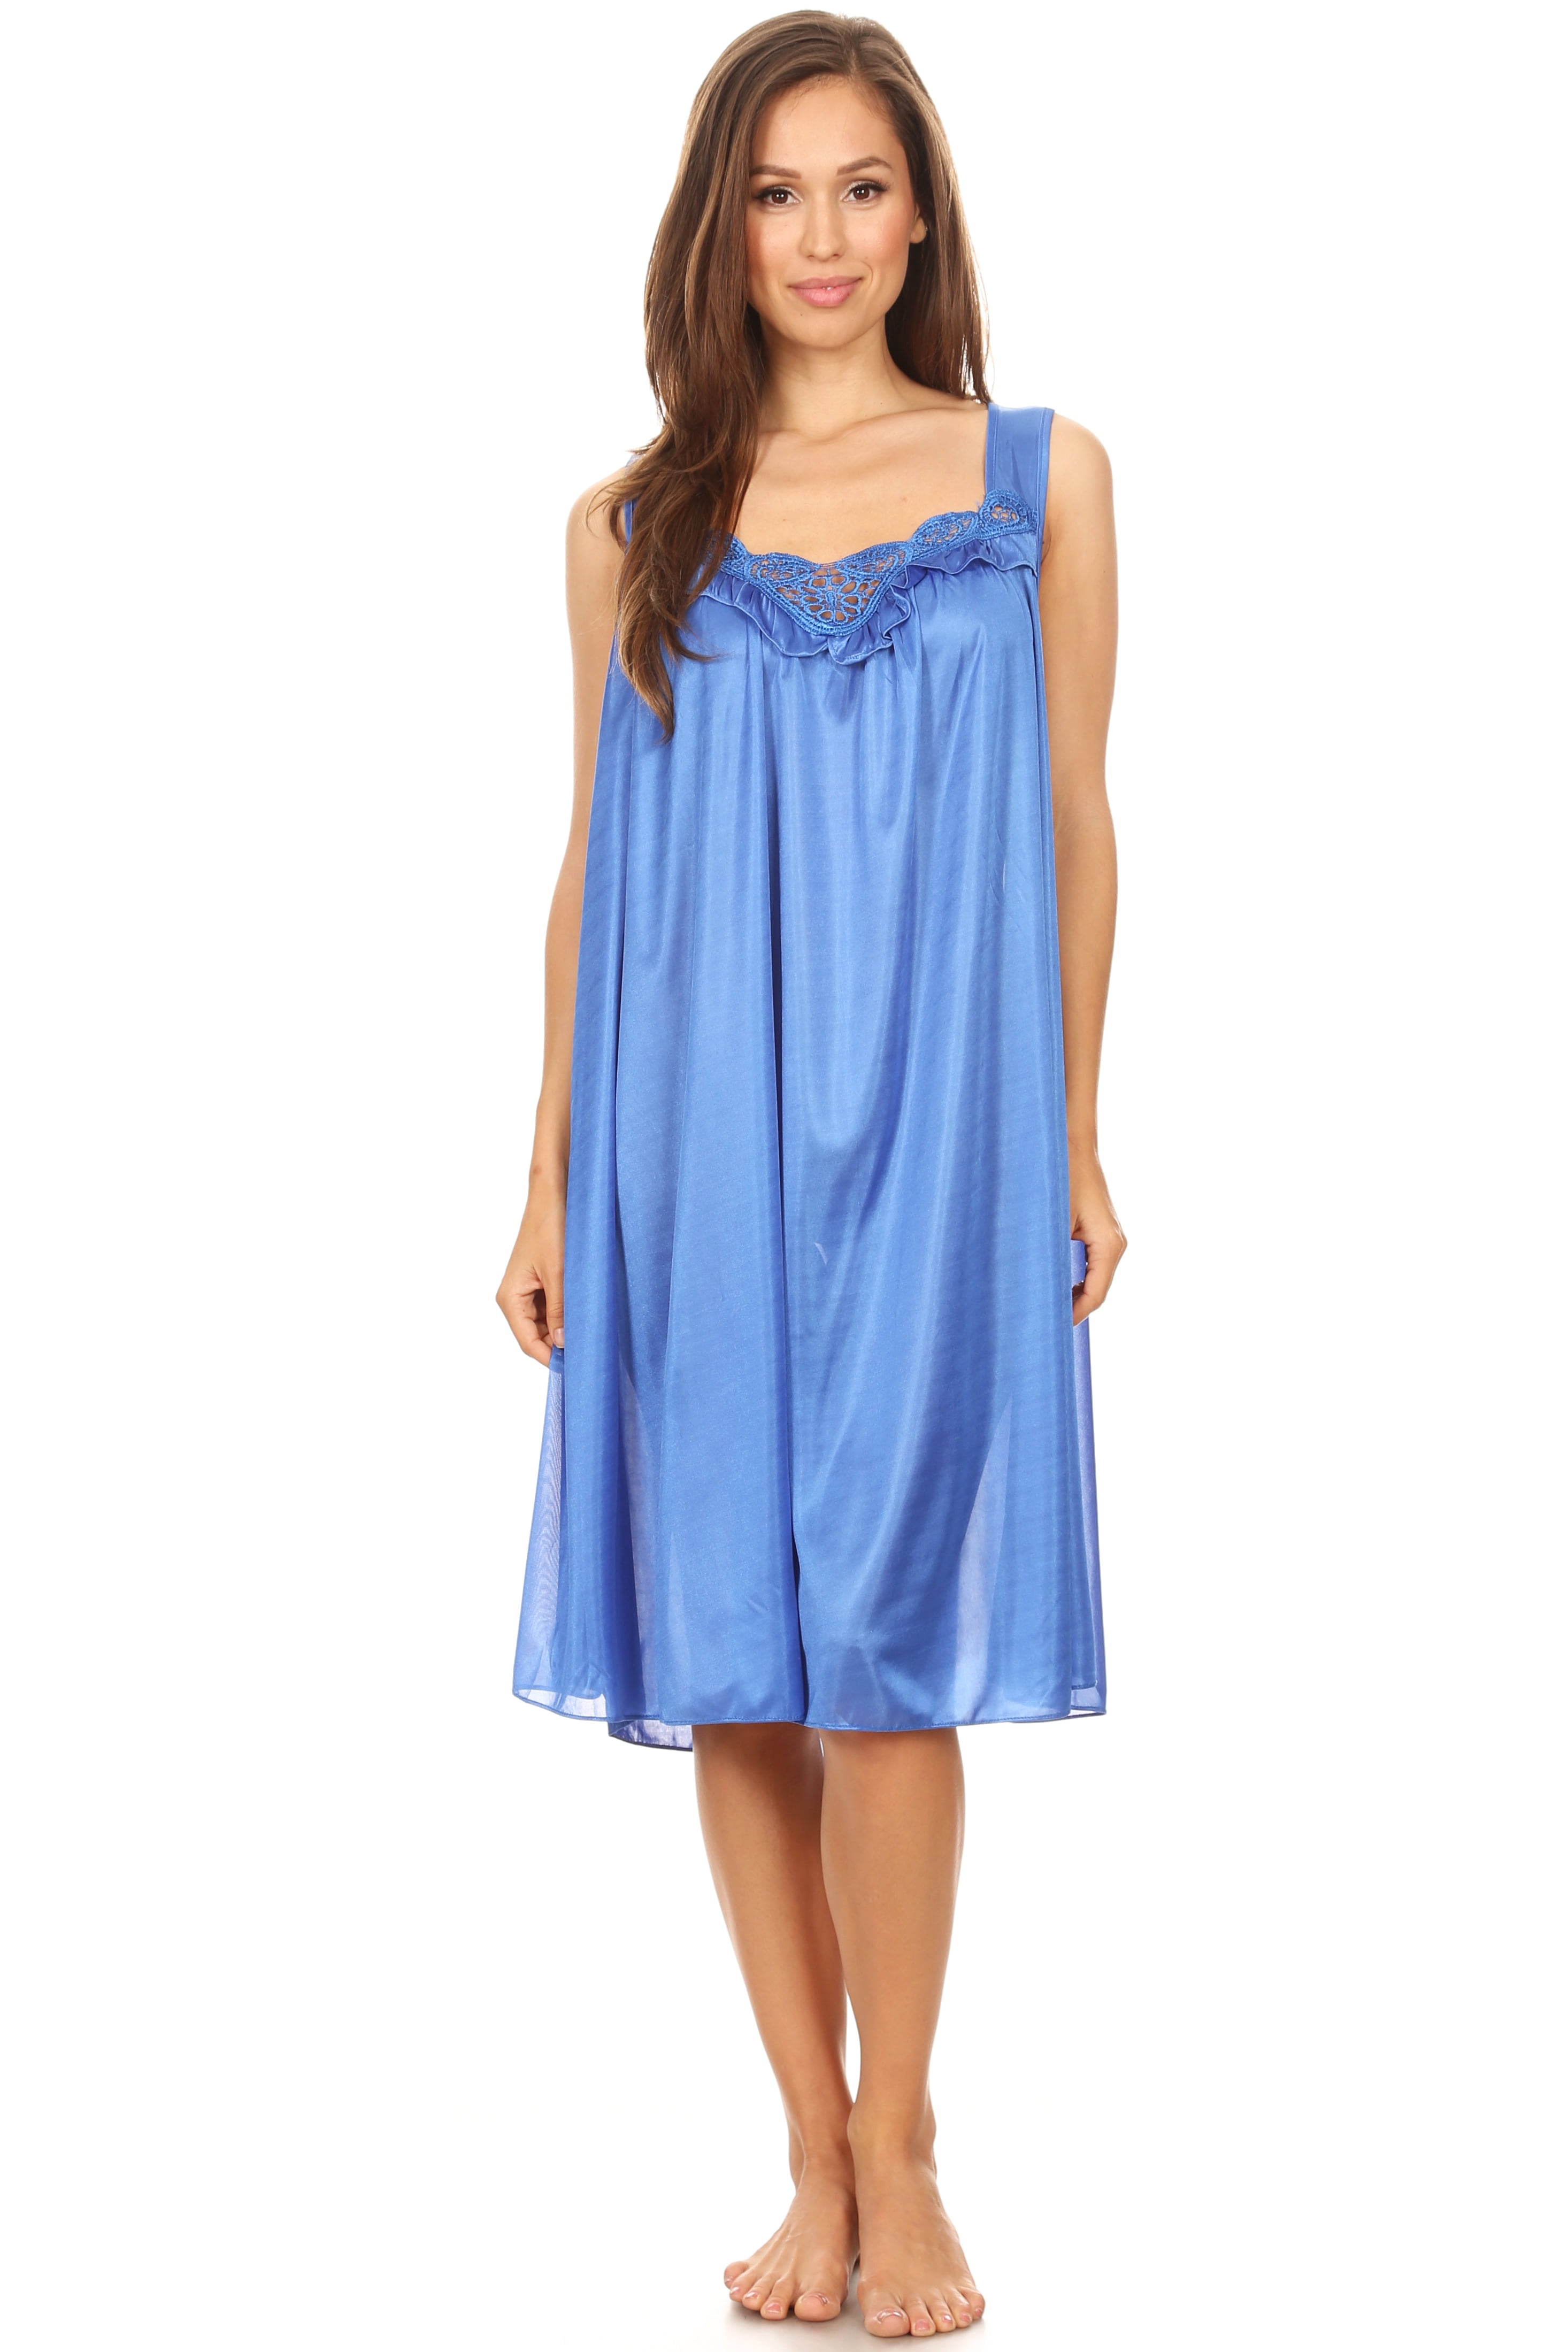 Lati Fashion Women Nightgown Sleepwear Female Sleep Dress Nightshirt ...